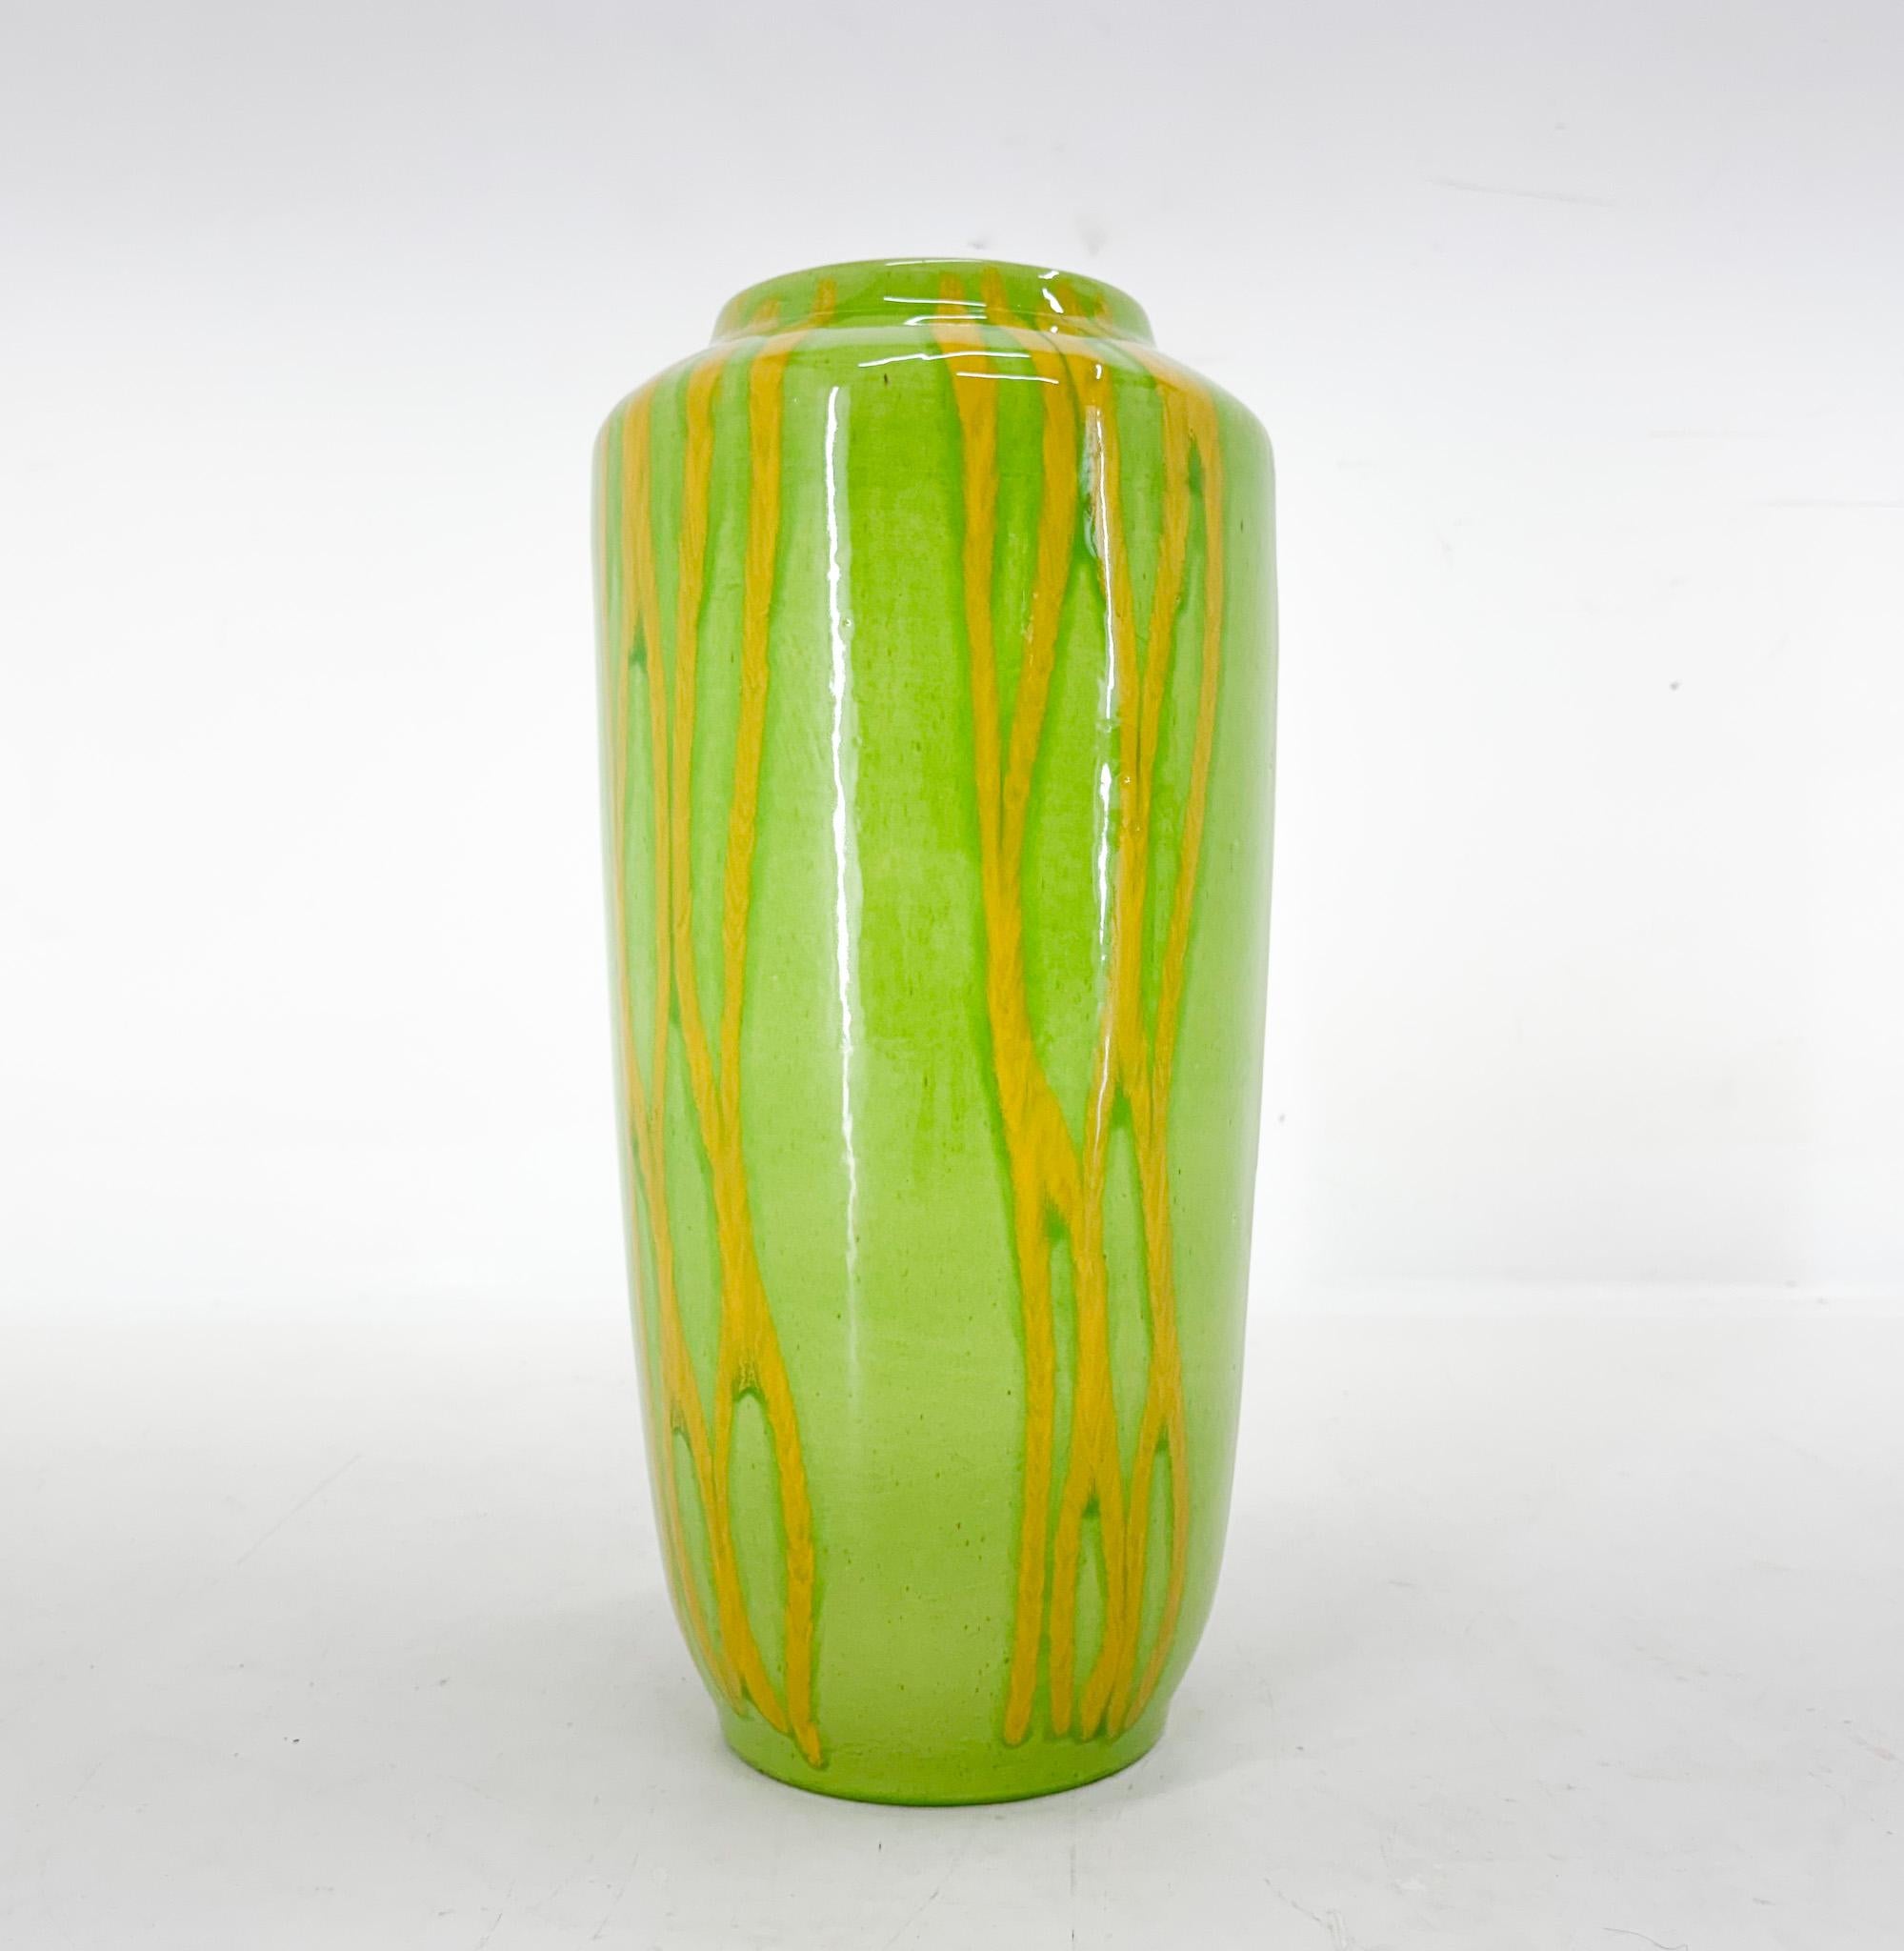 Magnifique vase de sol vintage allemand de Scheurich Keramik. Produit en Allemagne dans les années 1970.